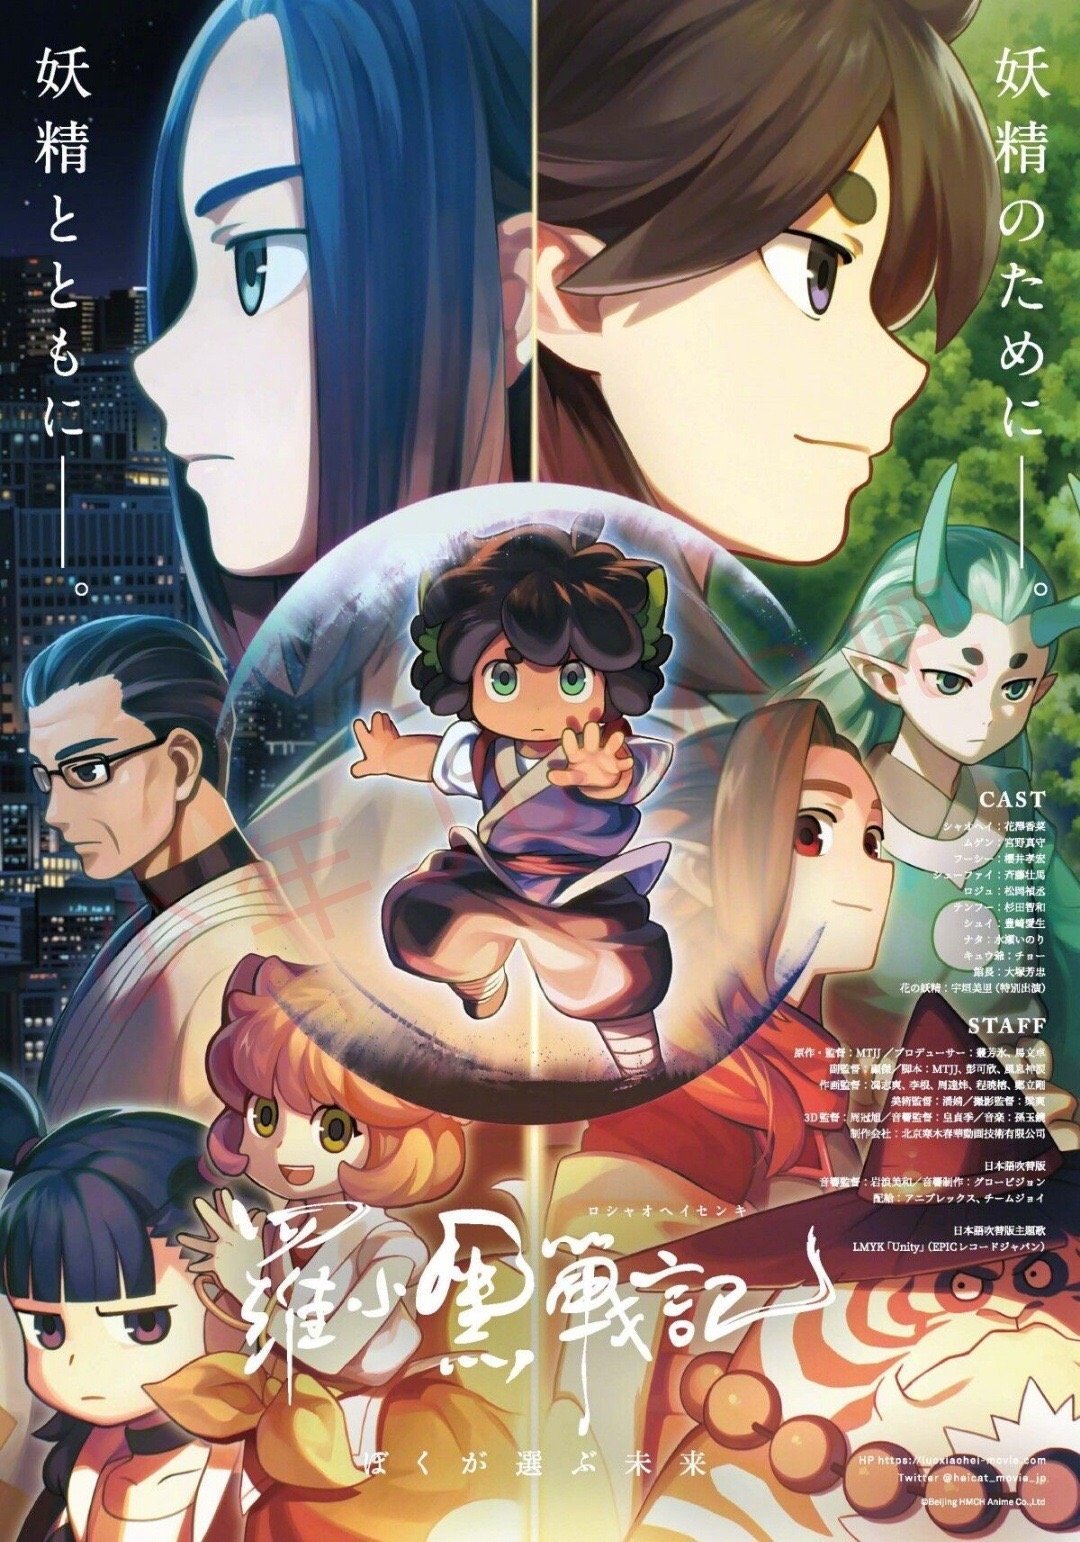 动画电影《罗小黑战记》日语吹替版正式预告公开，11月7日岛国上映,综合